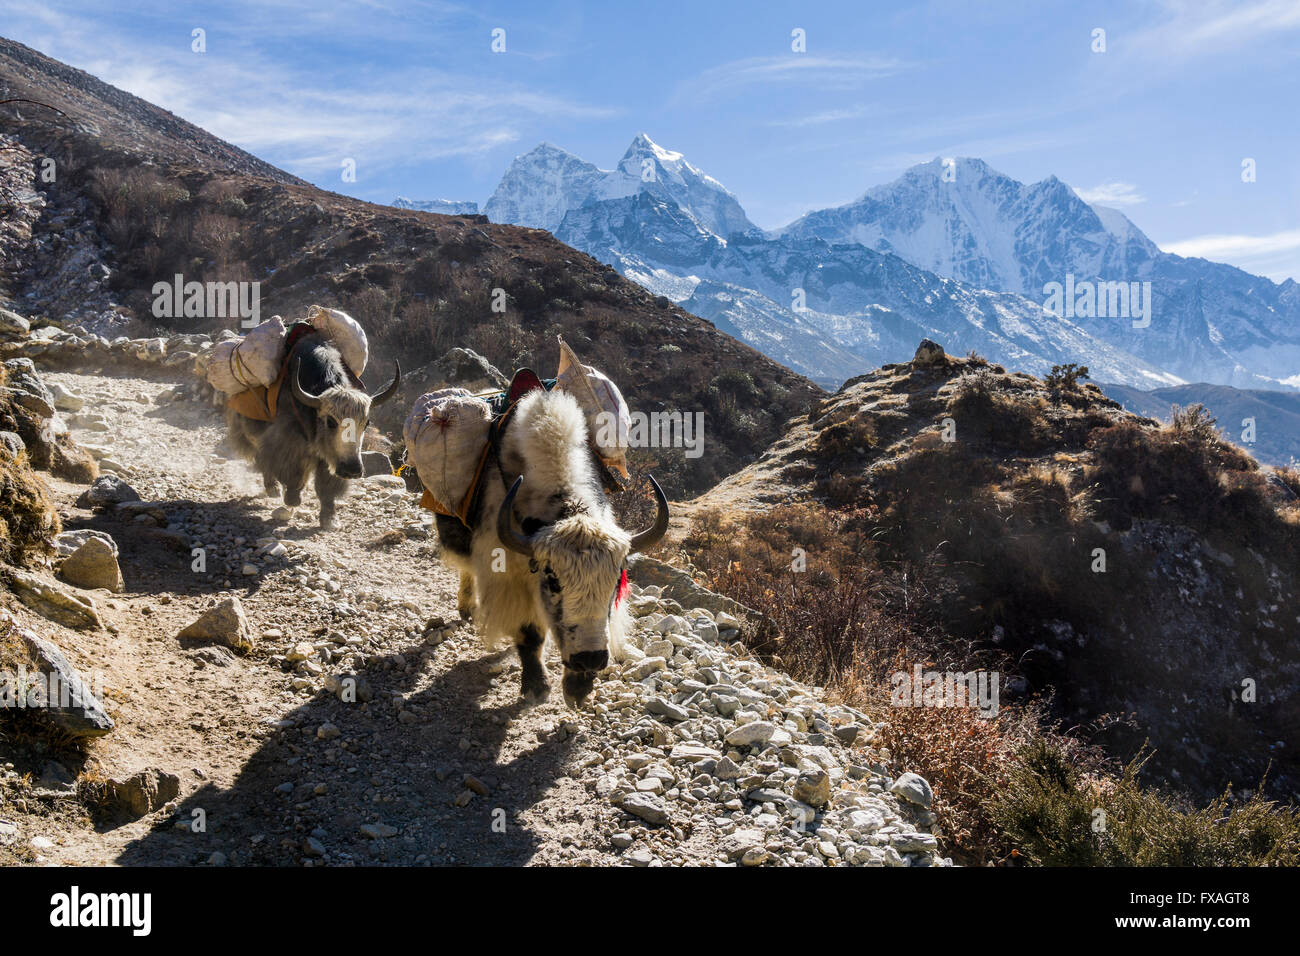 Les yacks sont utilisés pour le transport de marchandises sur une voie au-dessus de la vallée, Pangboche, Solo Khumbu, Népal Banque D'Images